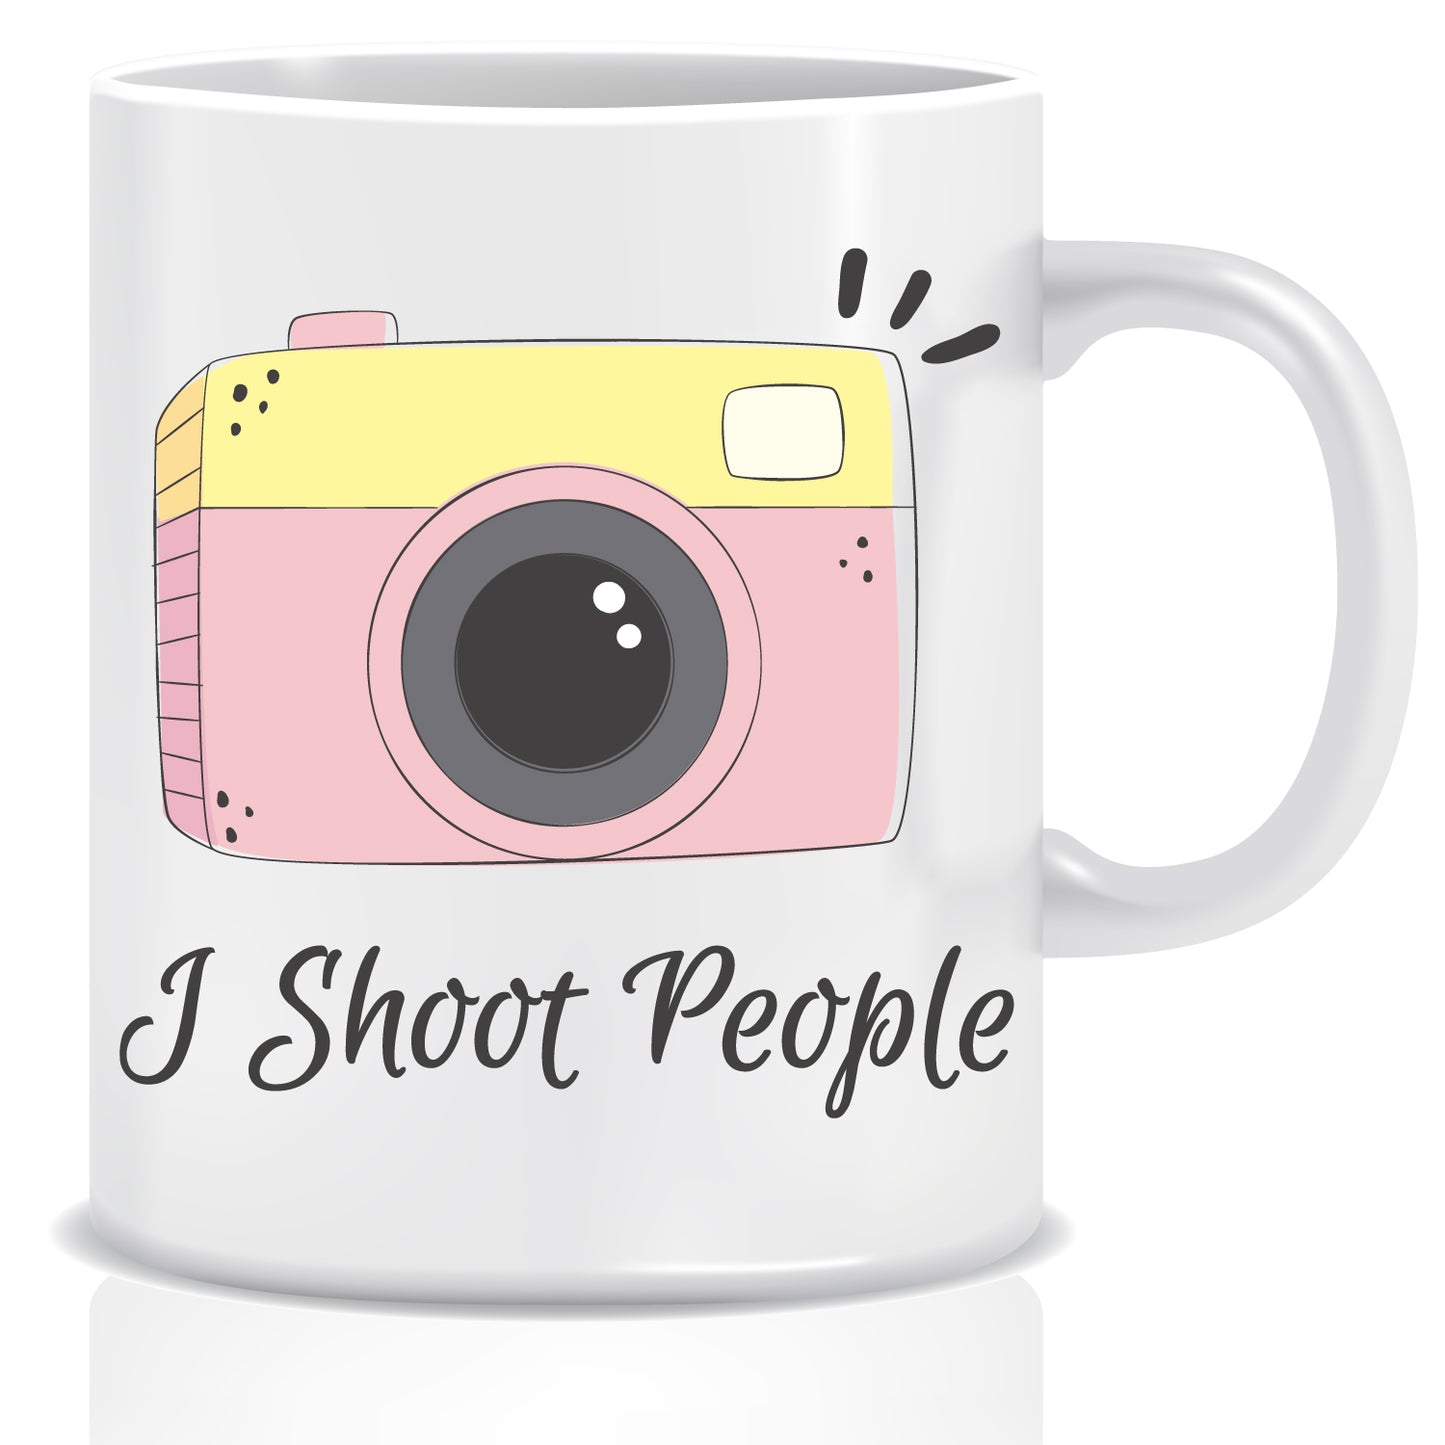 I Shoot People Ceramic Coffee Mug | ED1508